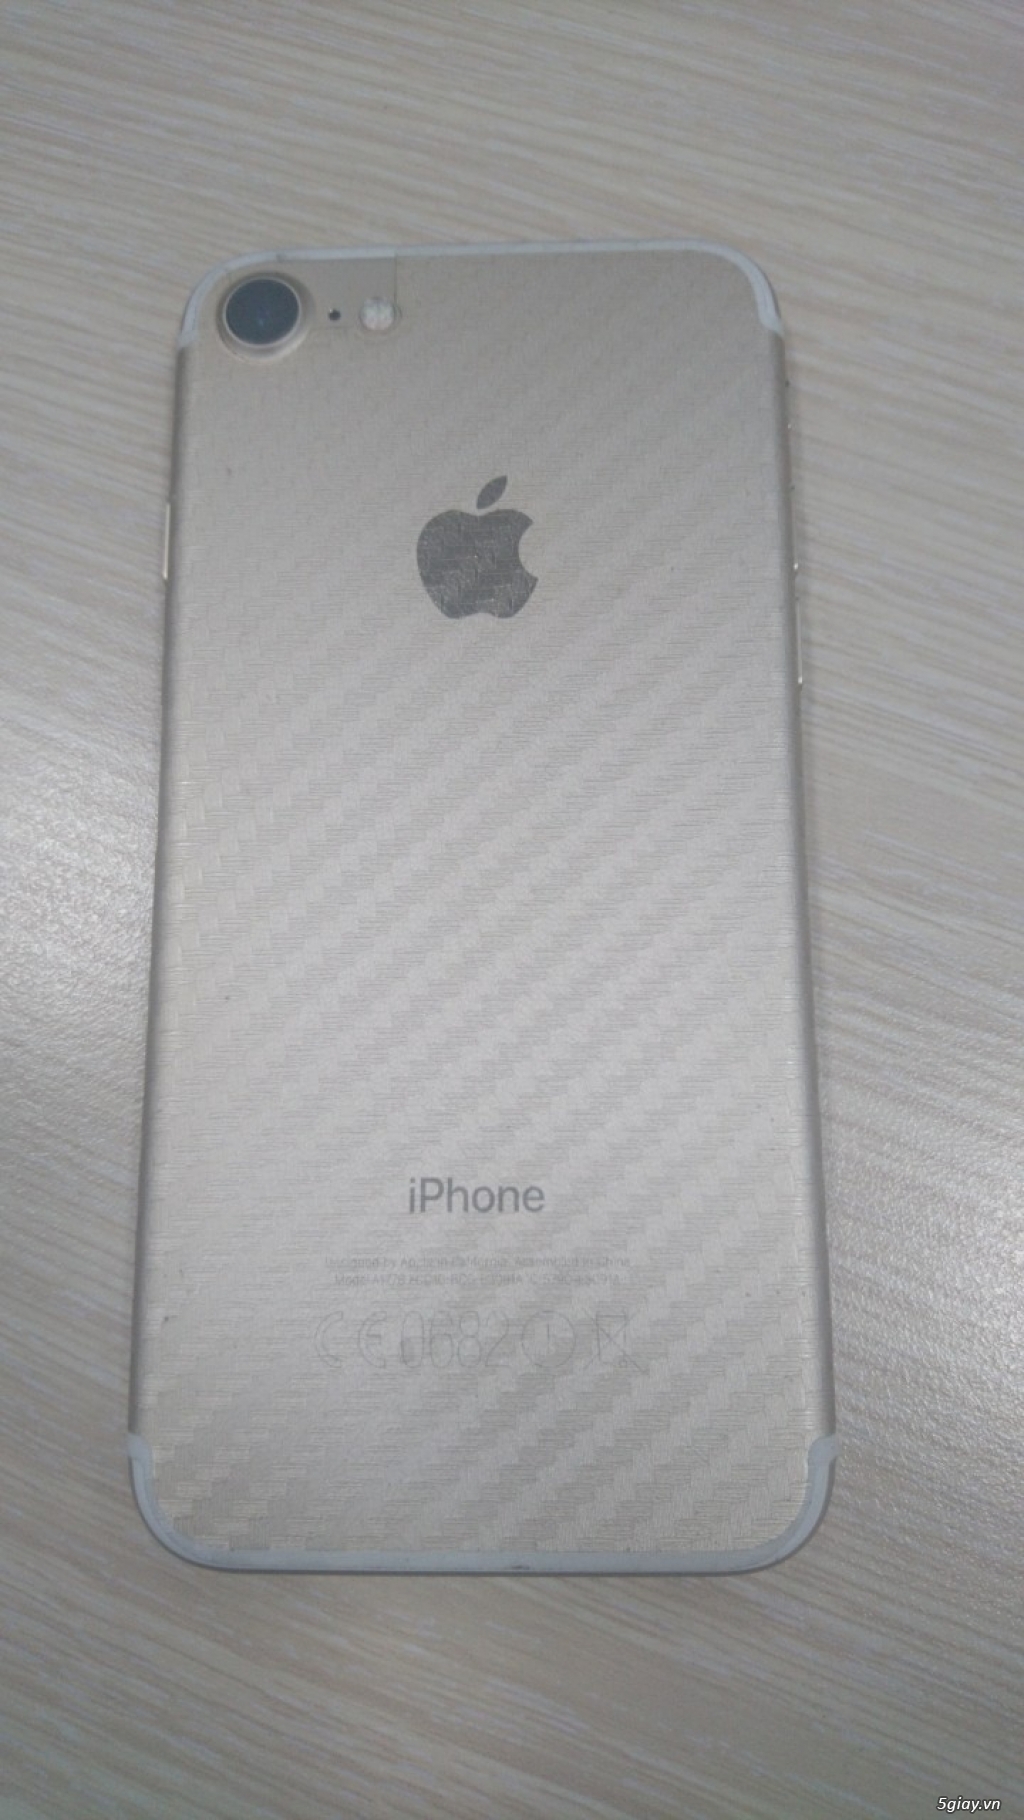 Iphone 7 32Gb Gold ngoại hình 98% - fullbox - 10tr5 - còn bh Apple - 4